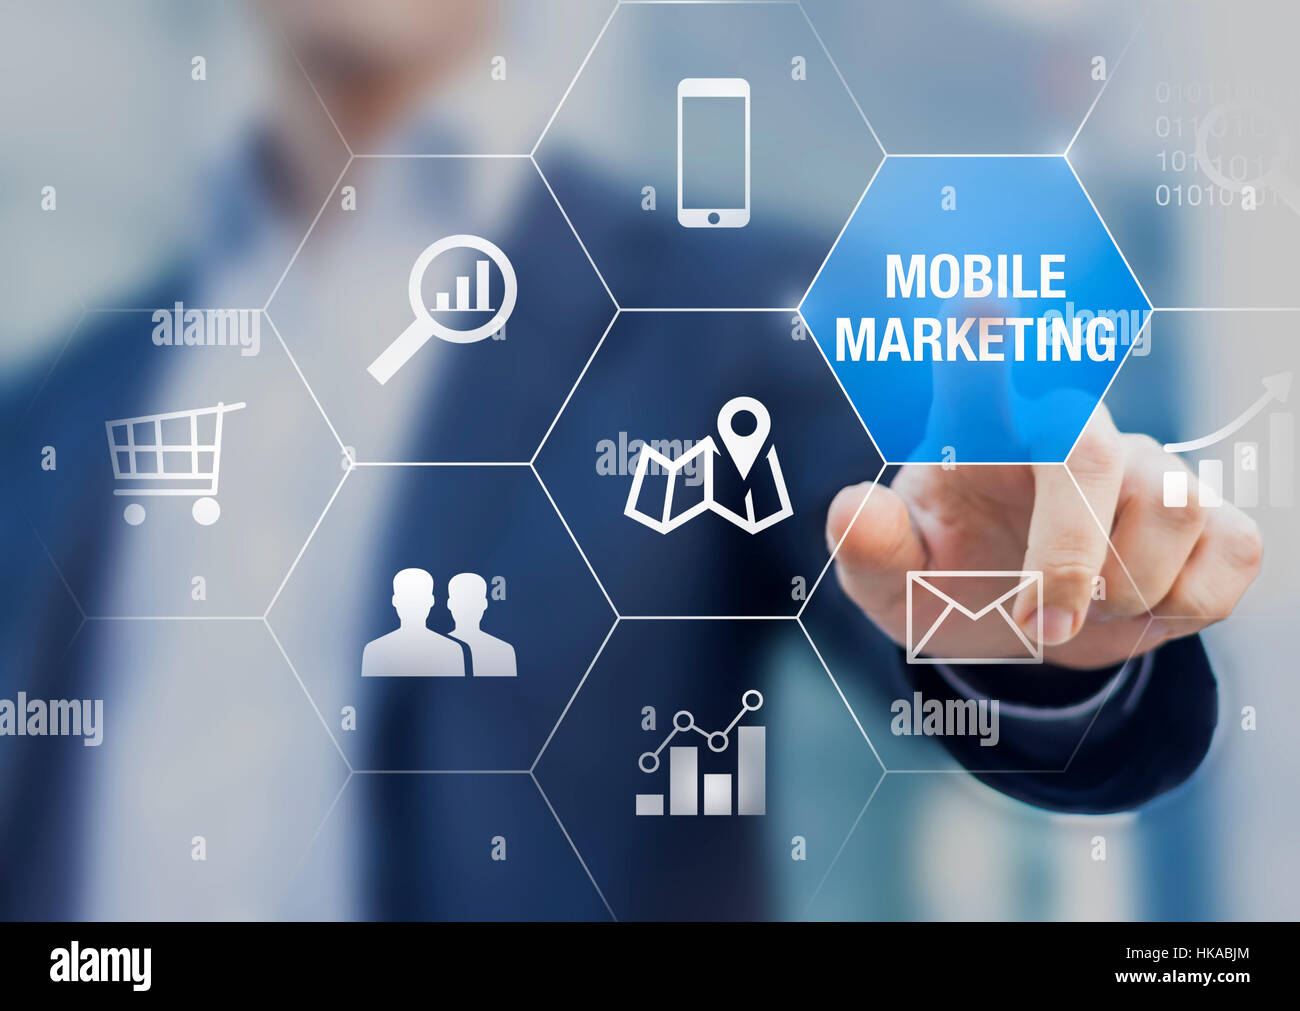 Mobile Marketing e i dati di e-commerce analytics concetto con una persona d'affari toccando un pulsante su una moderna interfaccia digitale Foto Stock